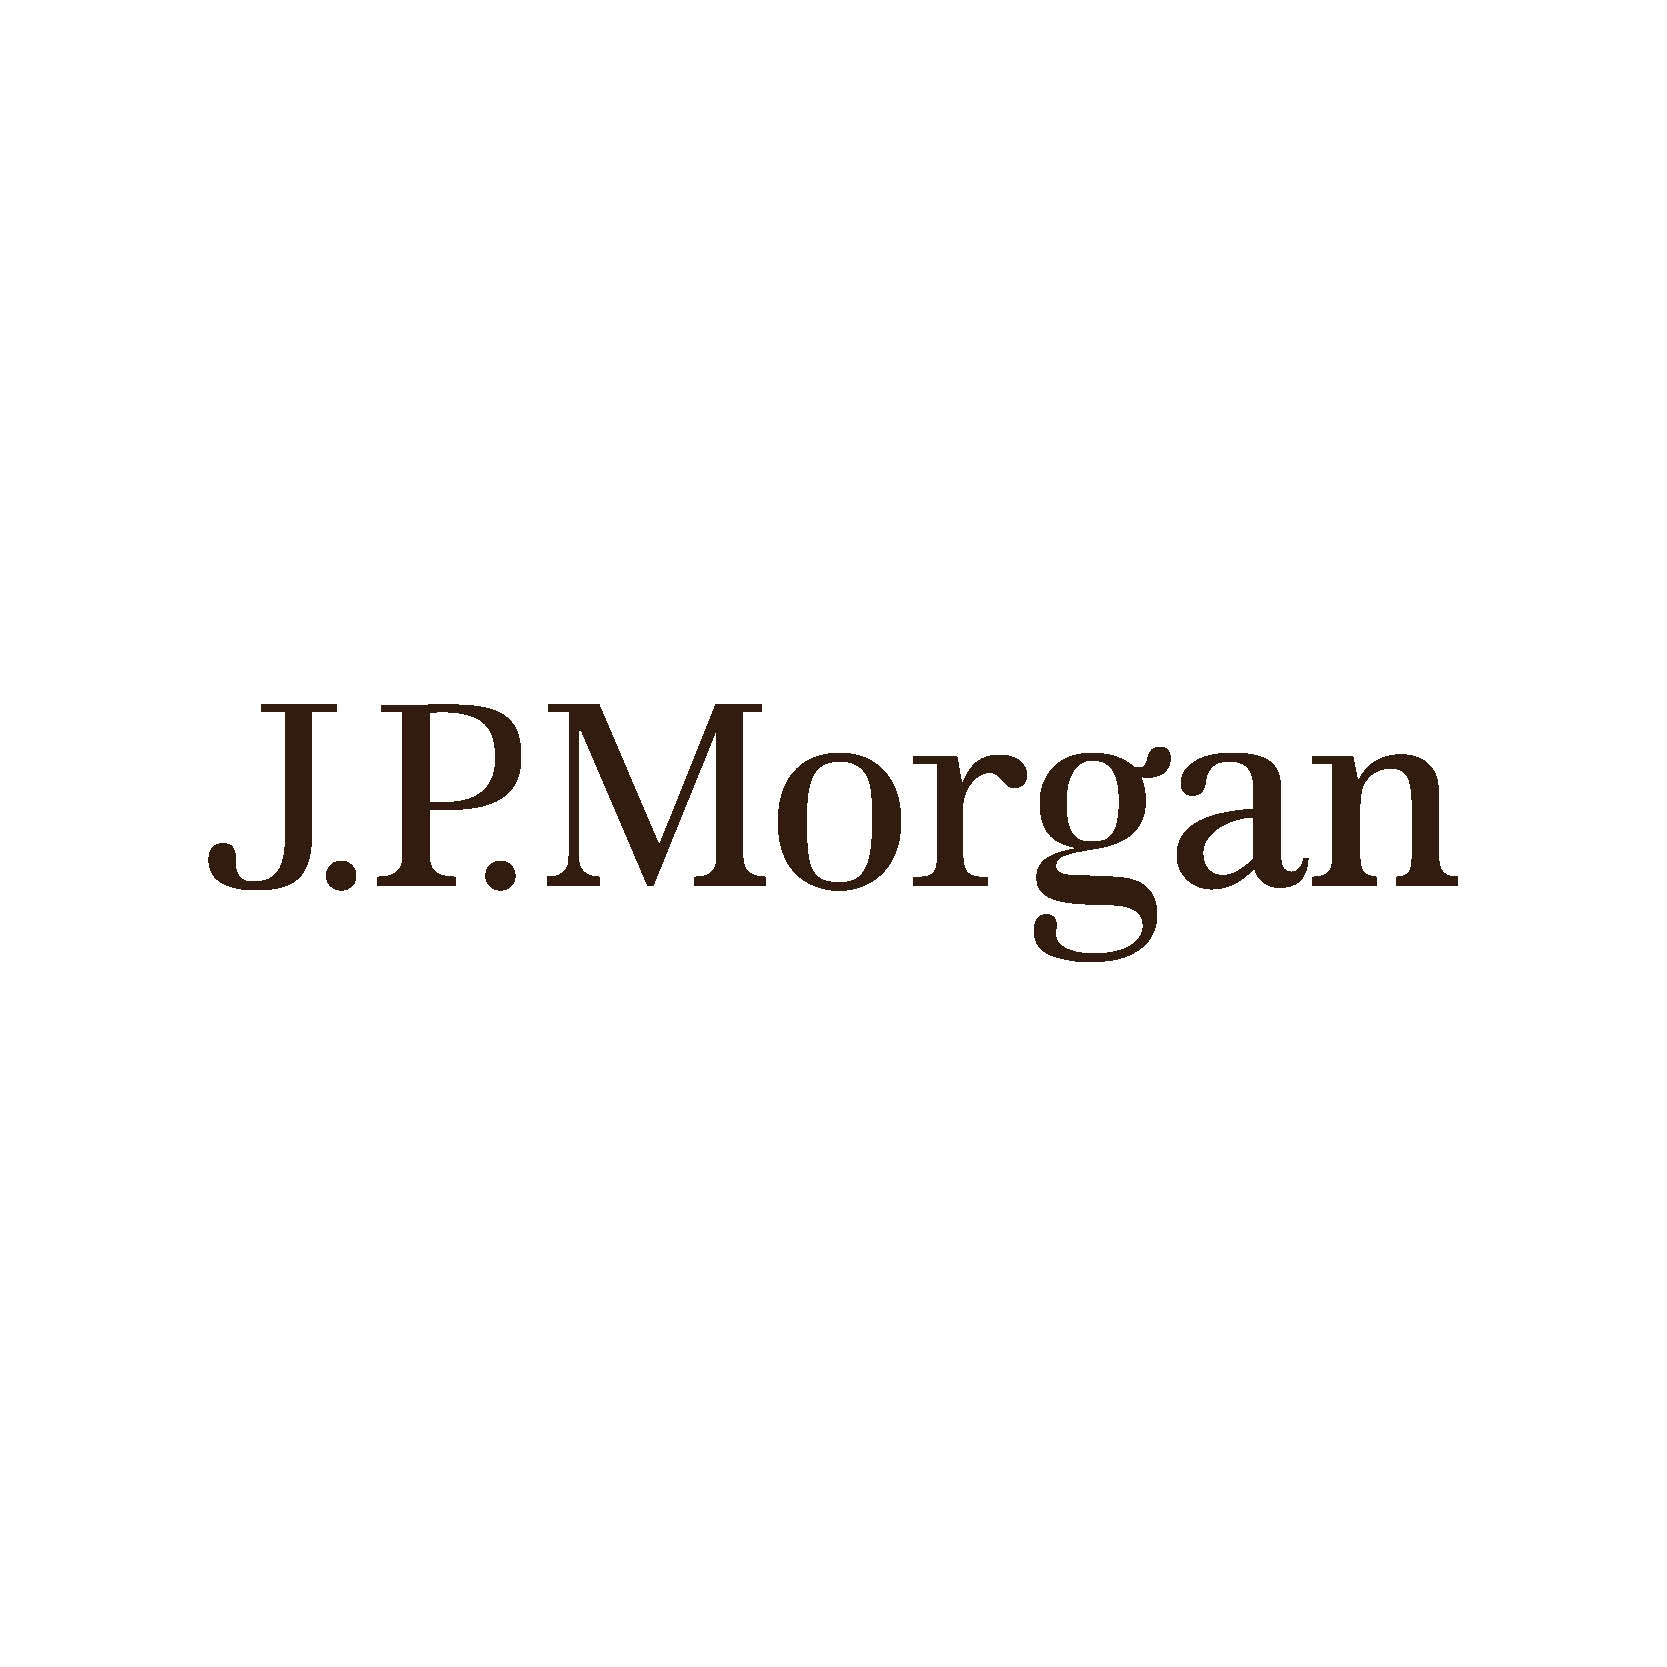 JPMorgan shares